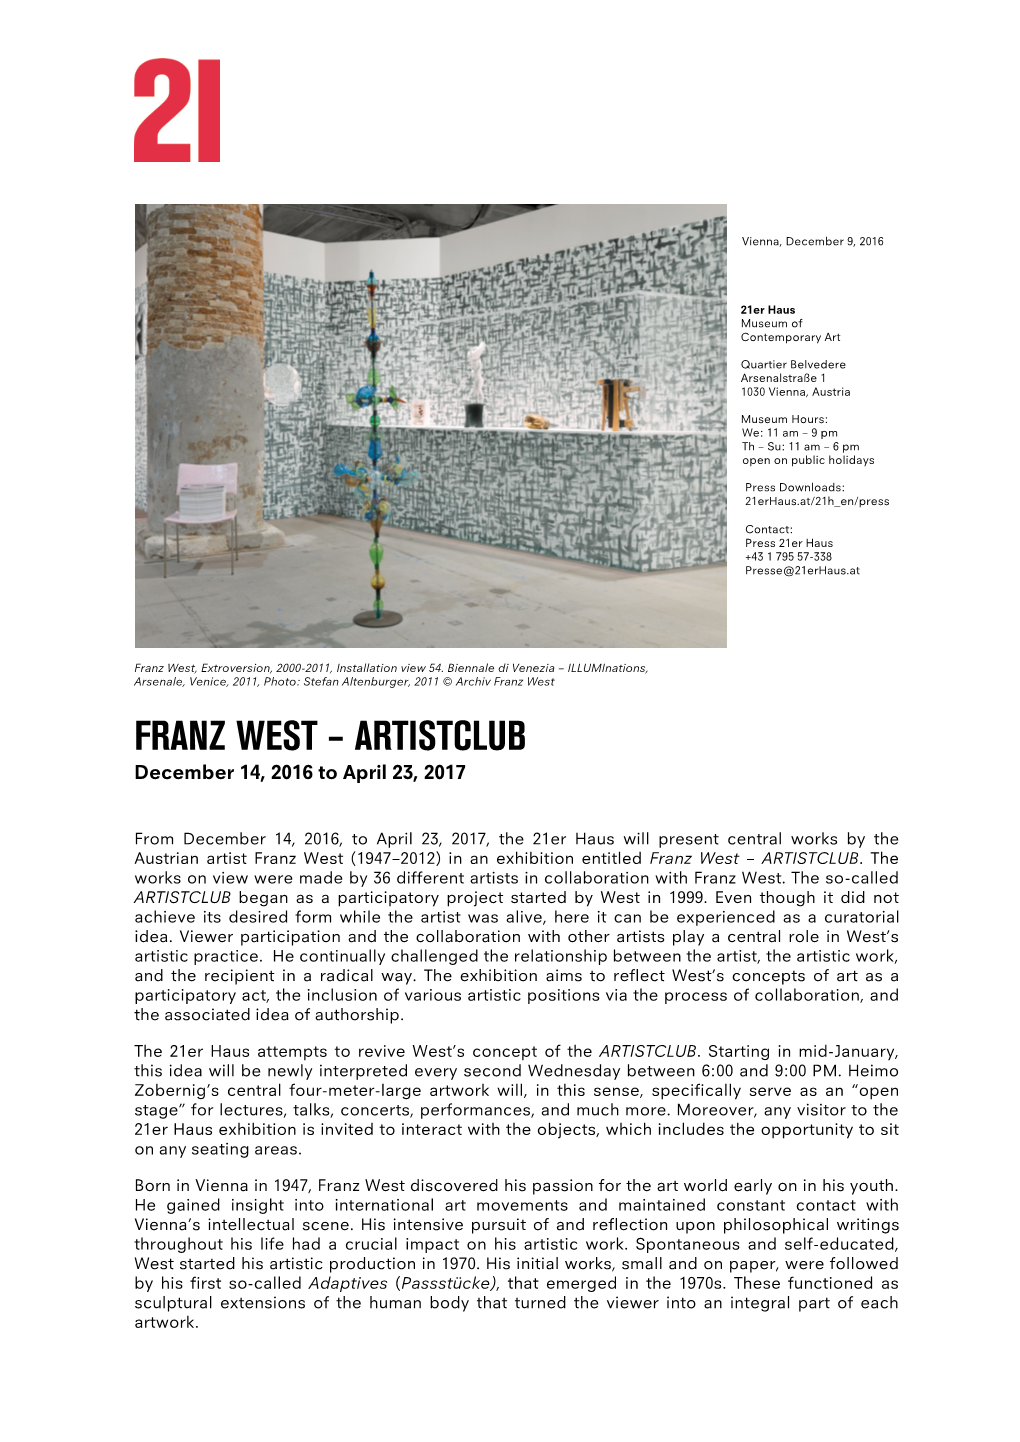 Franz West, Extroversion, 2000-2011, Installation View 54